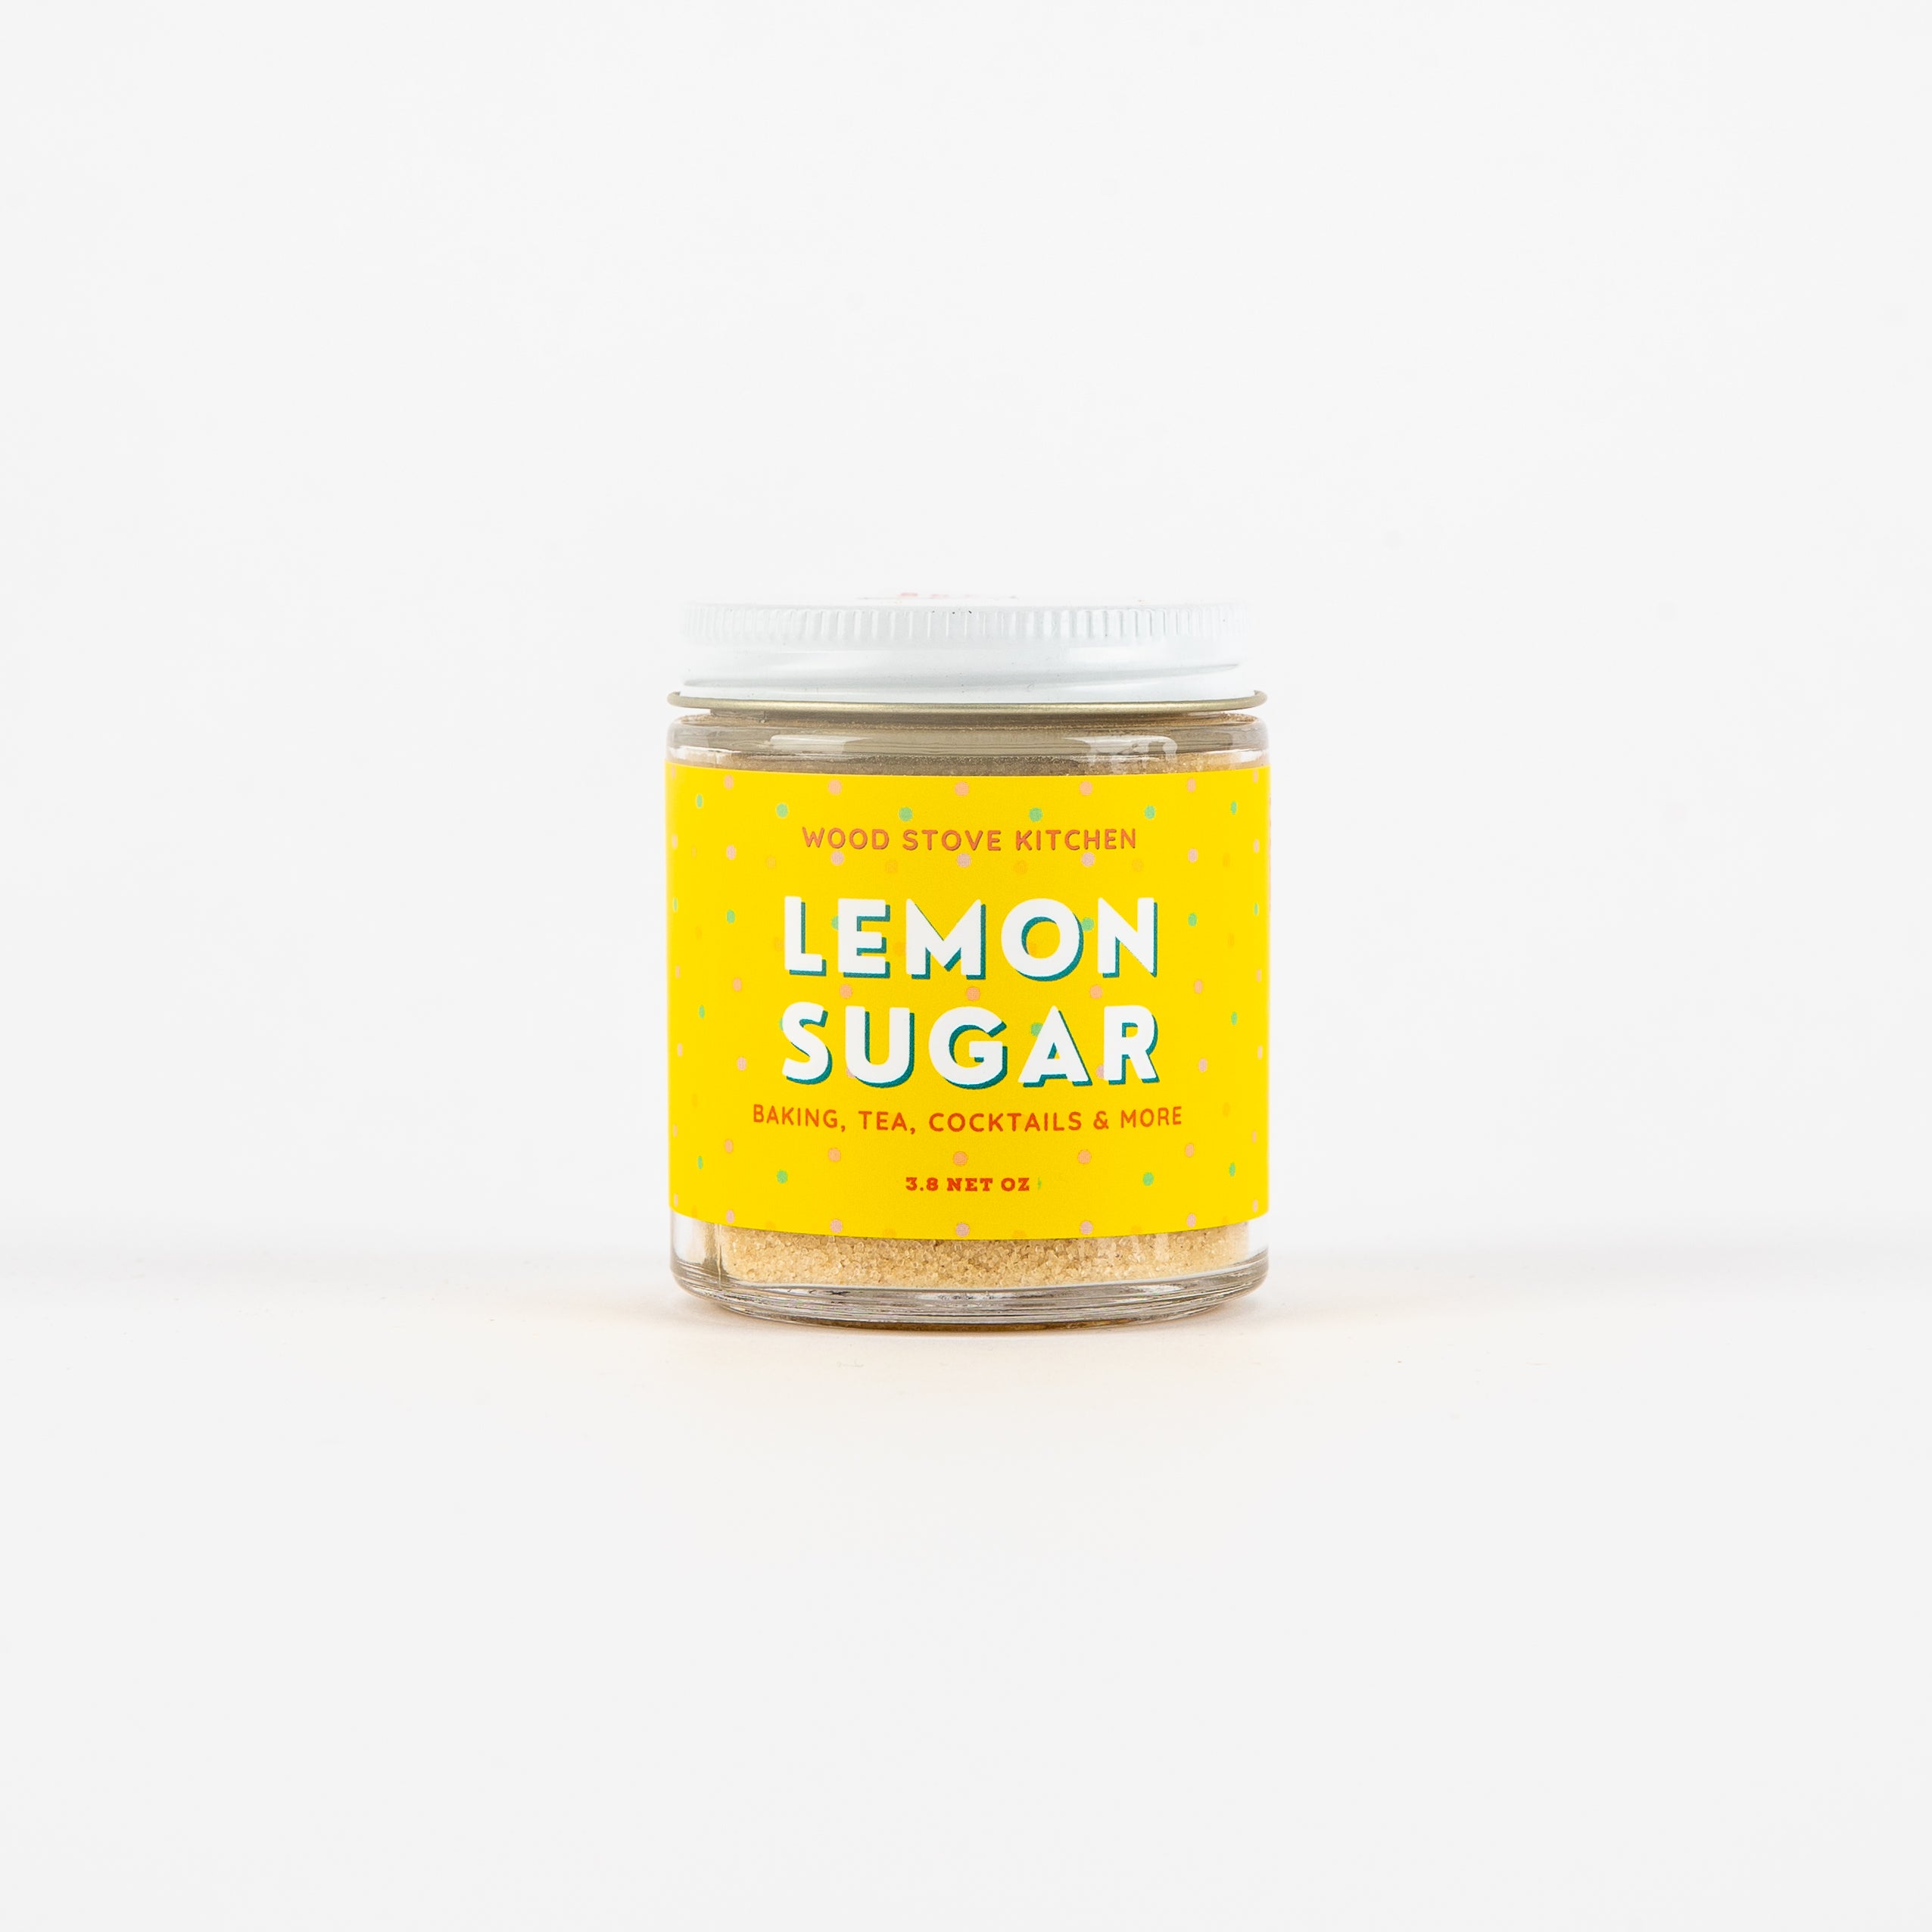 Lemon Sugar for Baking, Tea, Cocktails & More